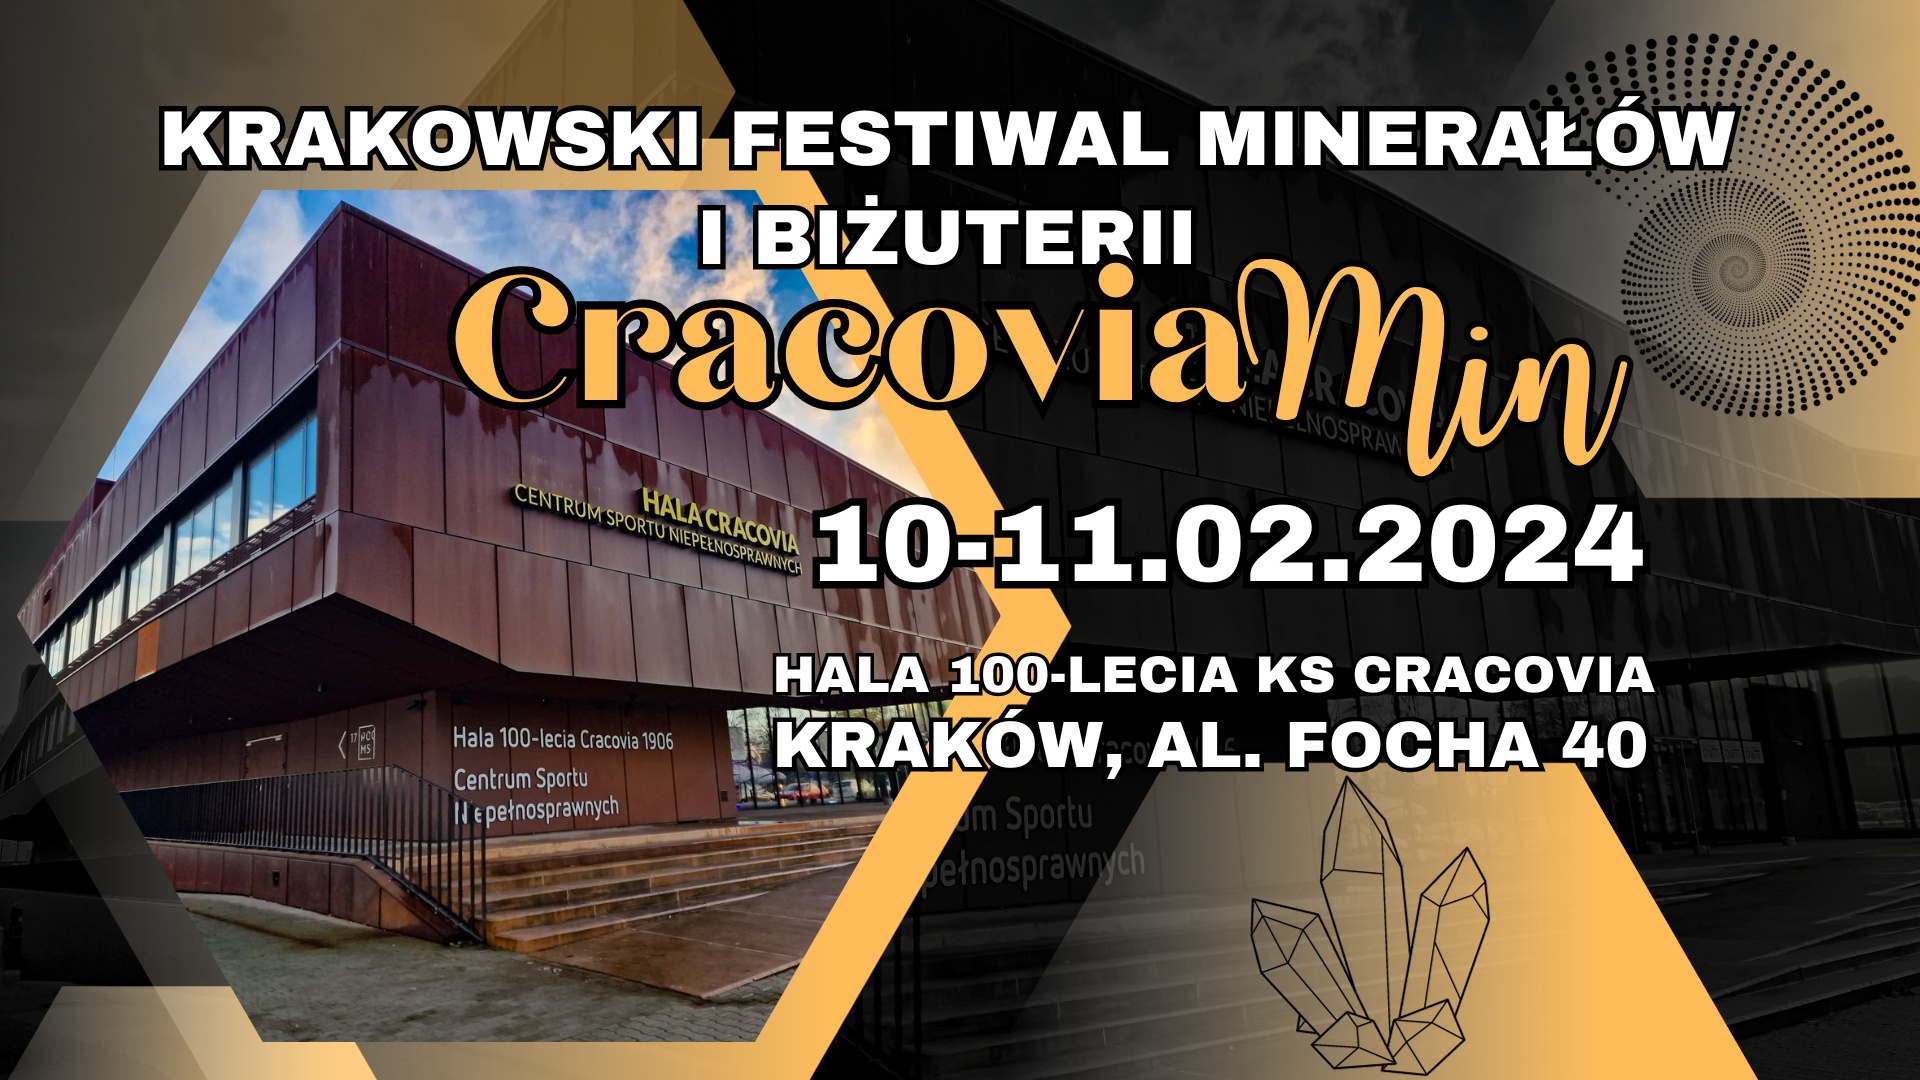 facebook tlo 2 1920 x 1080 px - CRACOVIA MIN - Festiwal Minerałów i Biżuterii w Hali Cracovia!